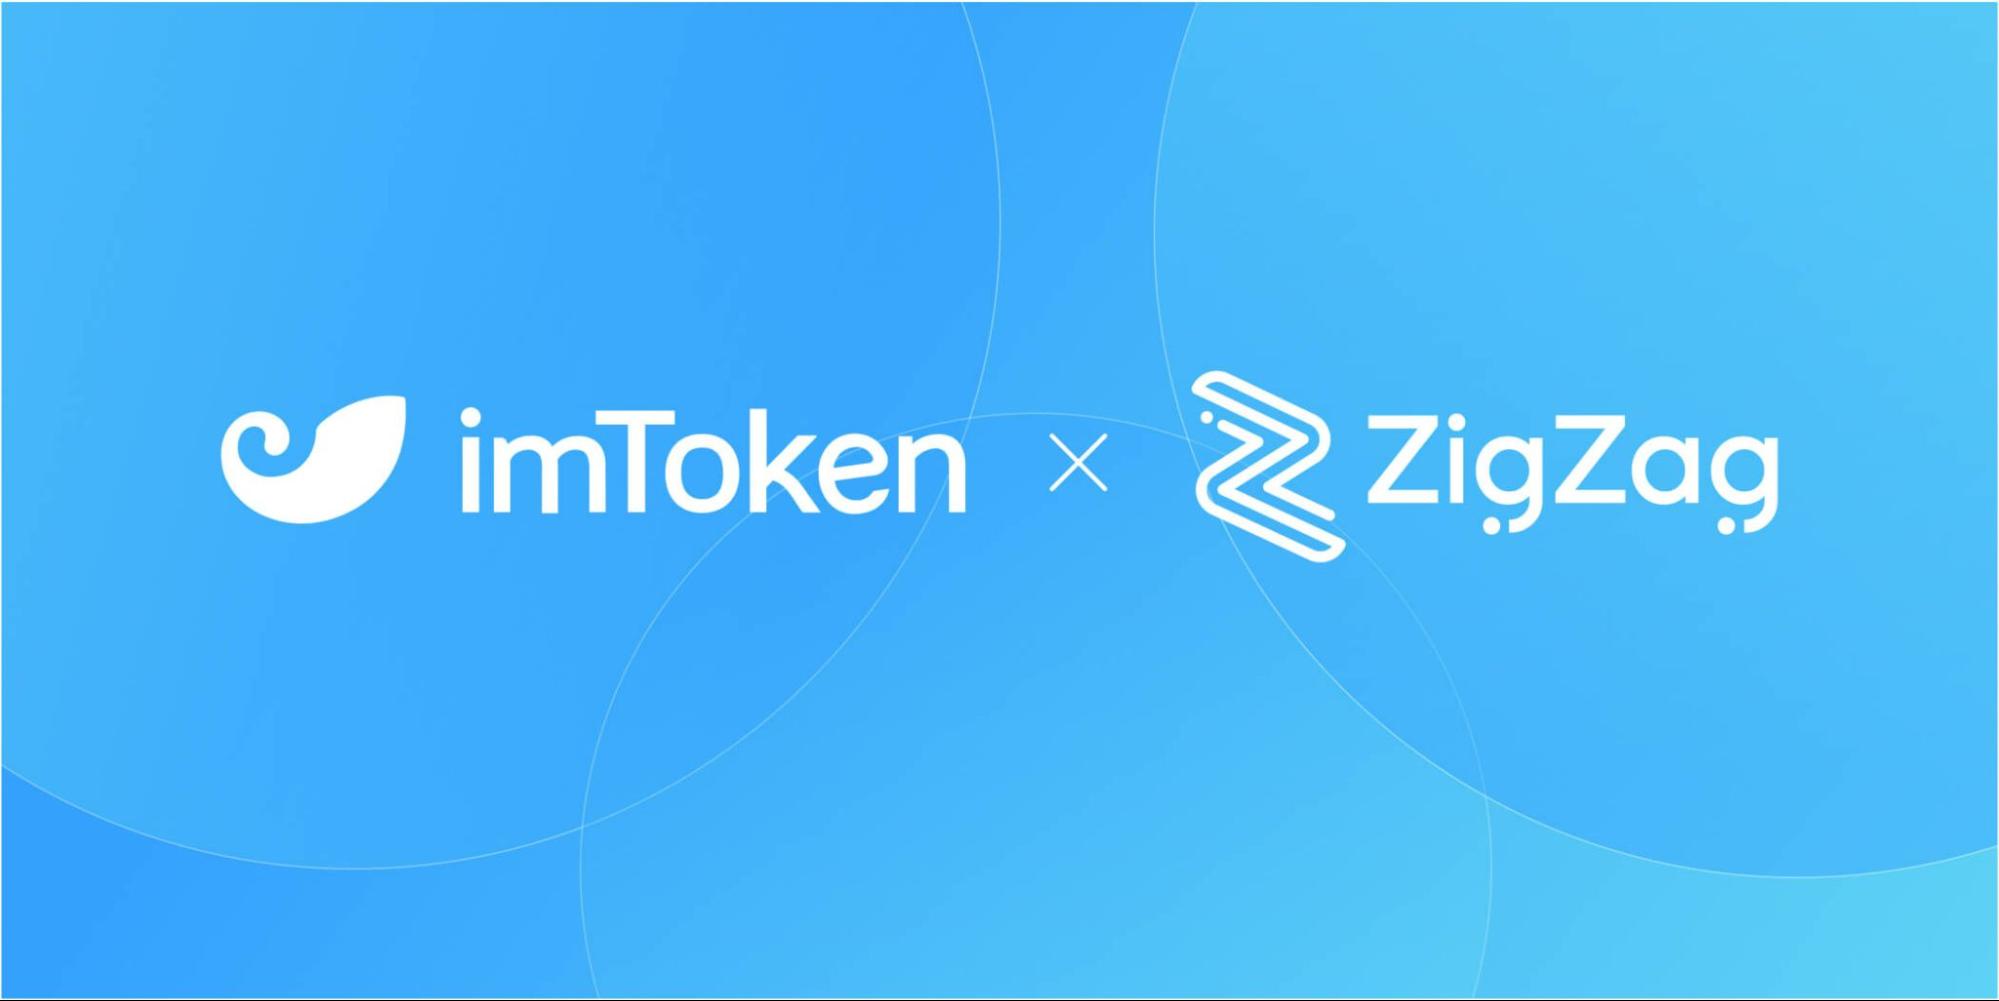 Trade on zkSync with ZigZag Exchange on imToken